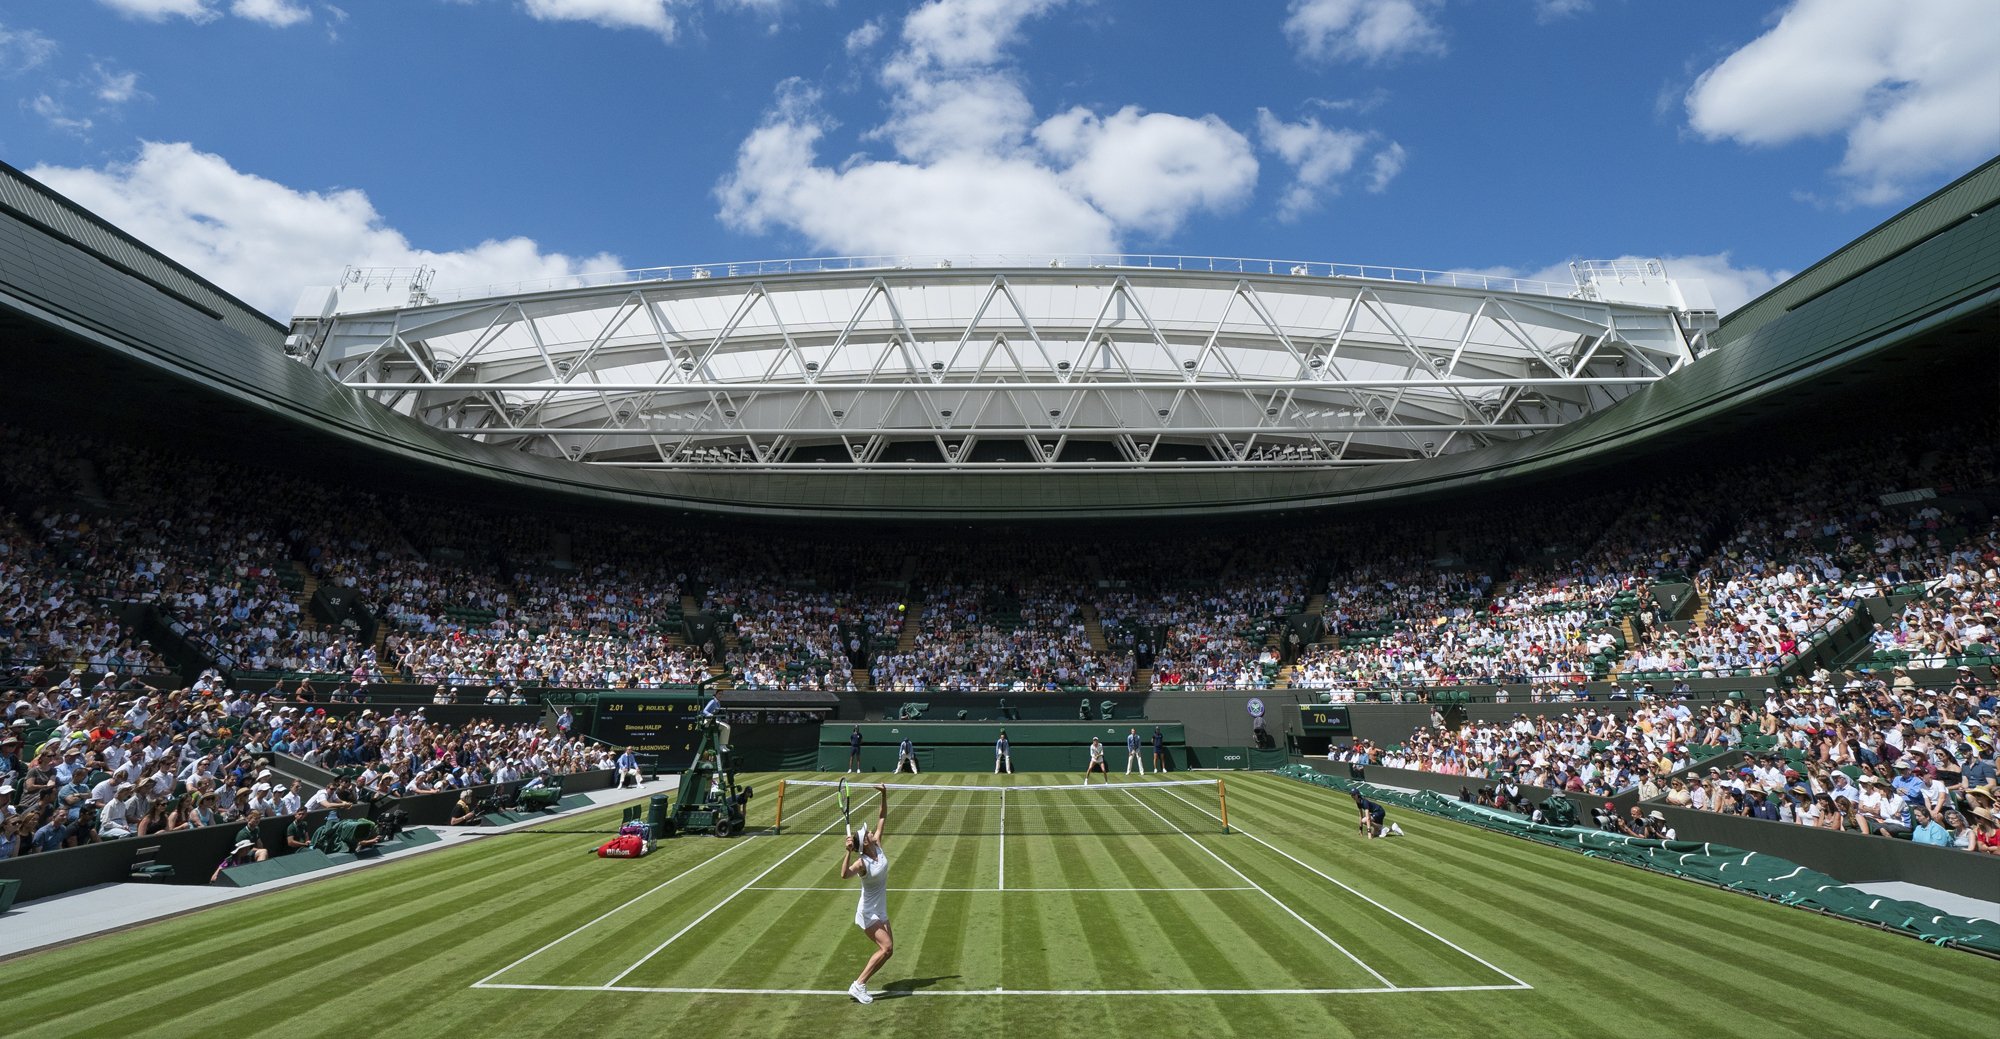 No.1 Court, Wimbledon KSS